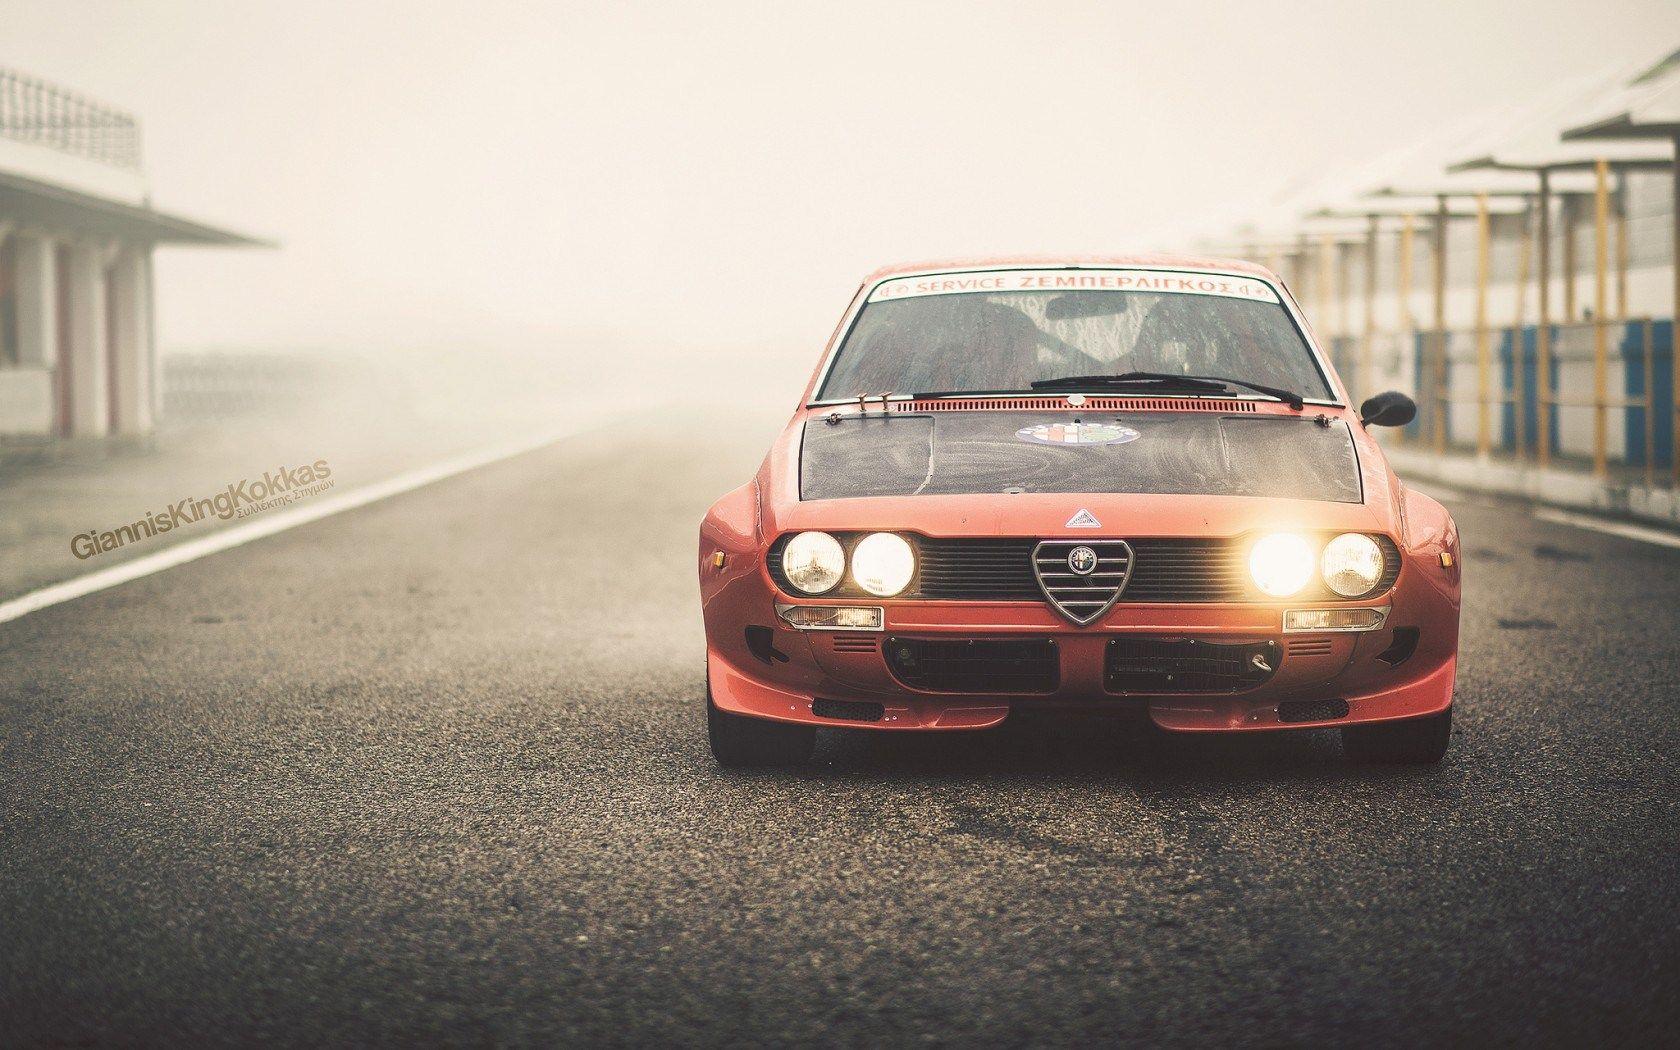 Alfa Romeo Wallpaper, HDQ Beautiful Alfa Romeo Image & Wallpaper